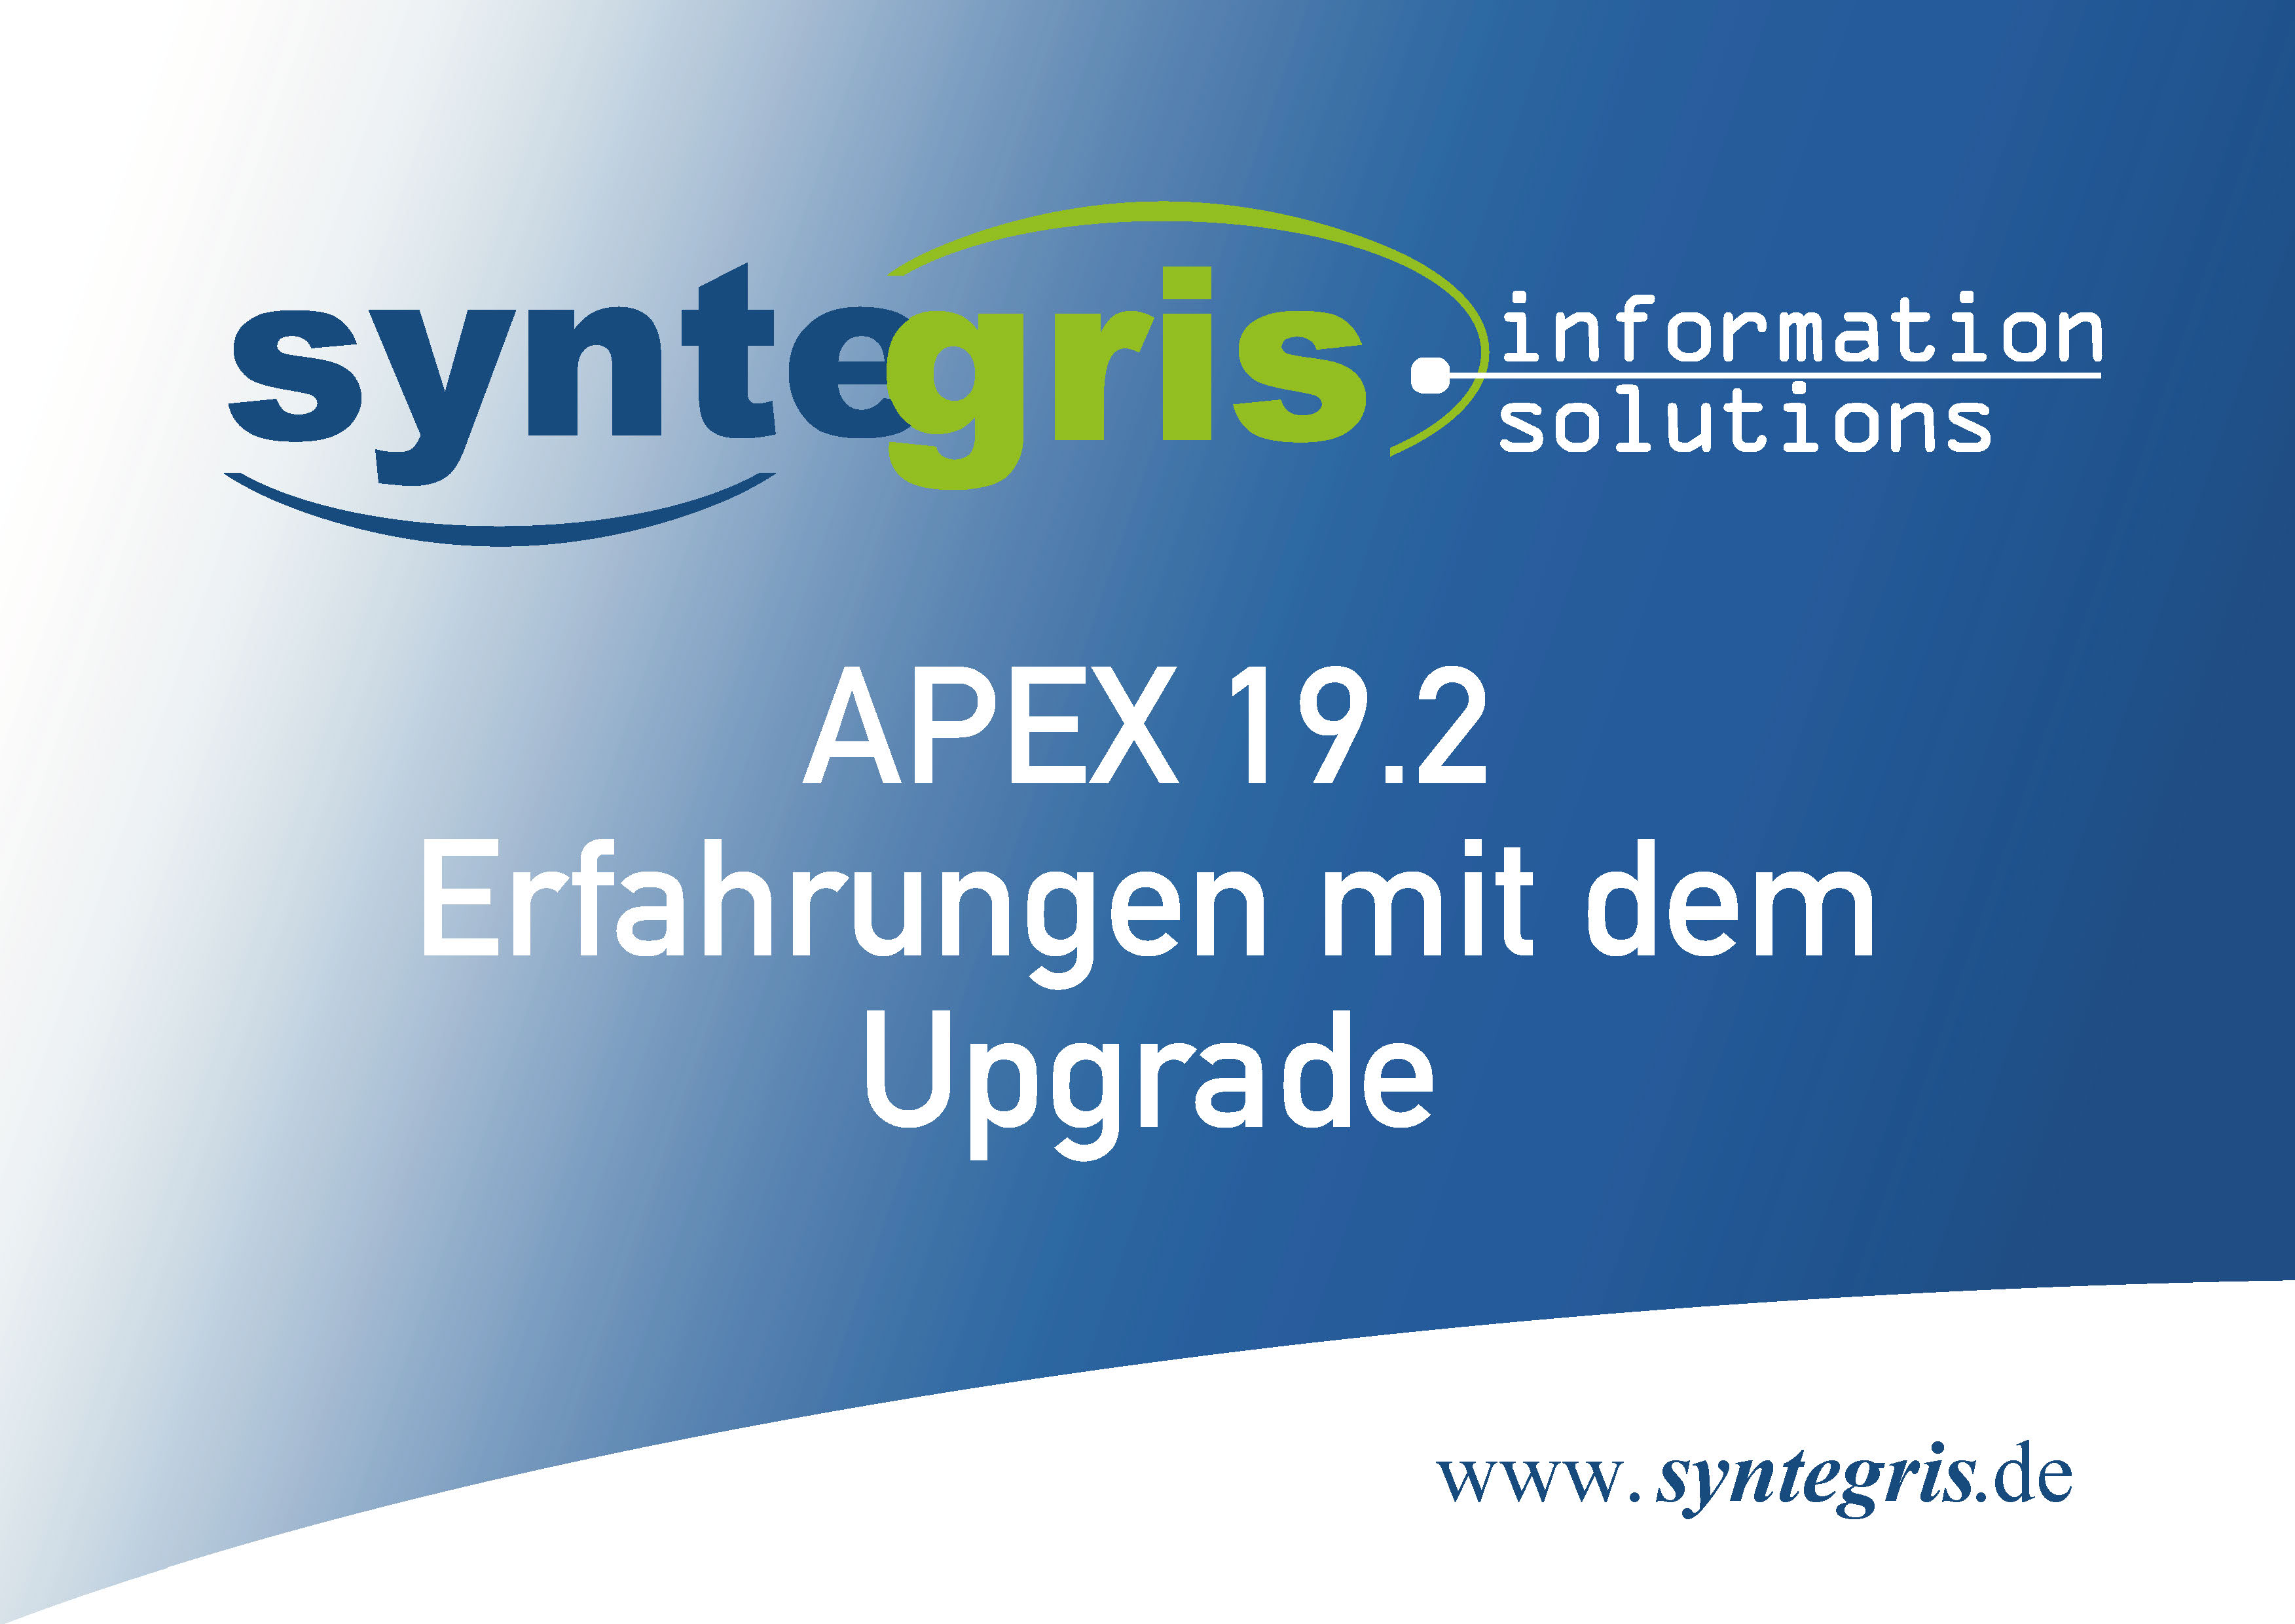 APEX 19.2 Upgrade Experiences